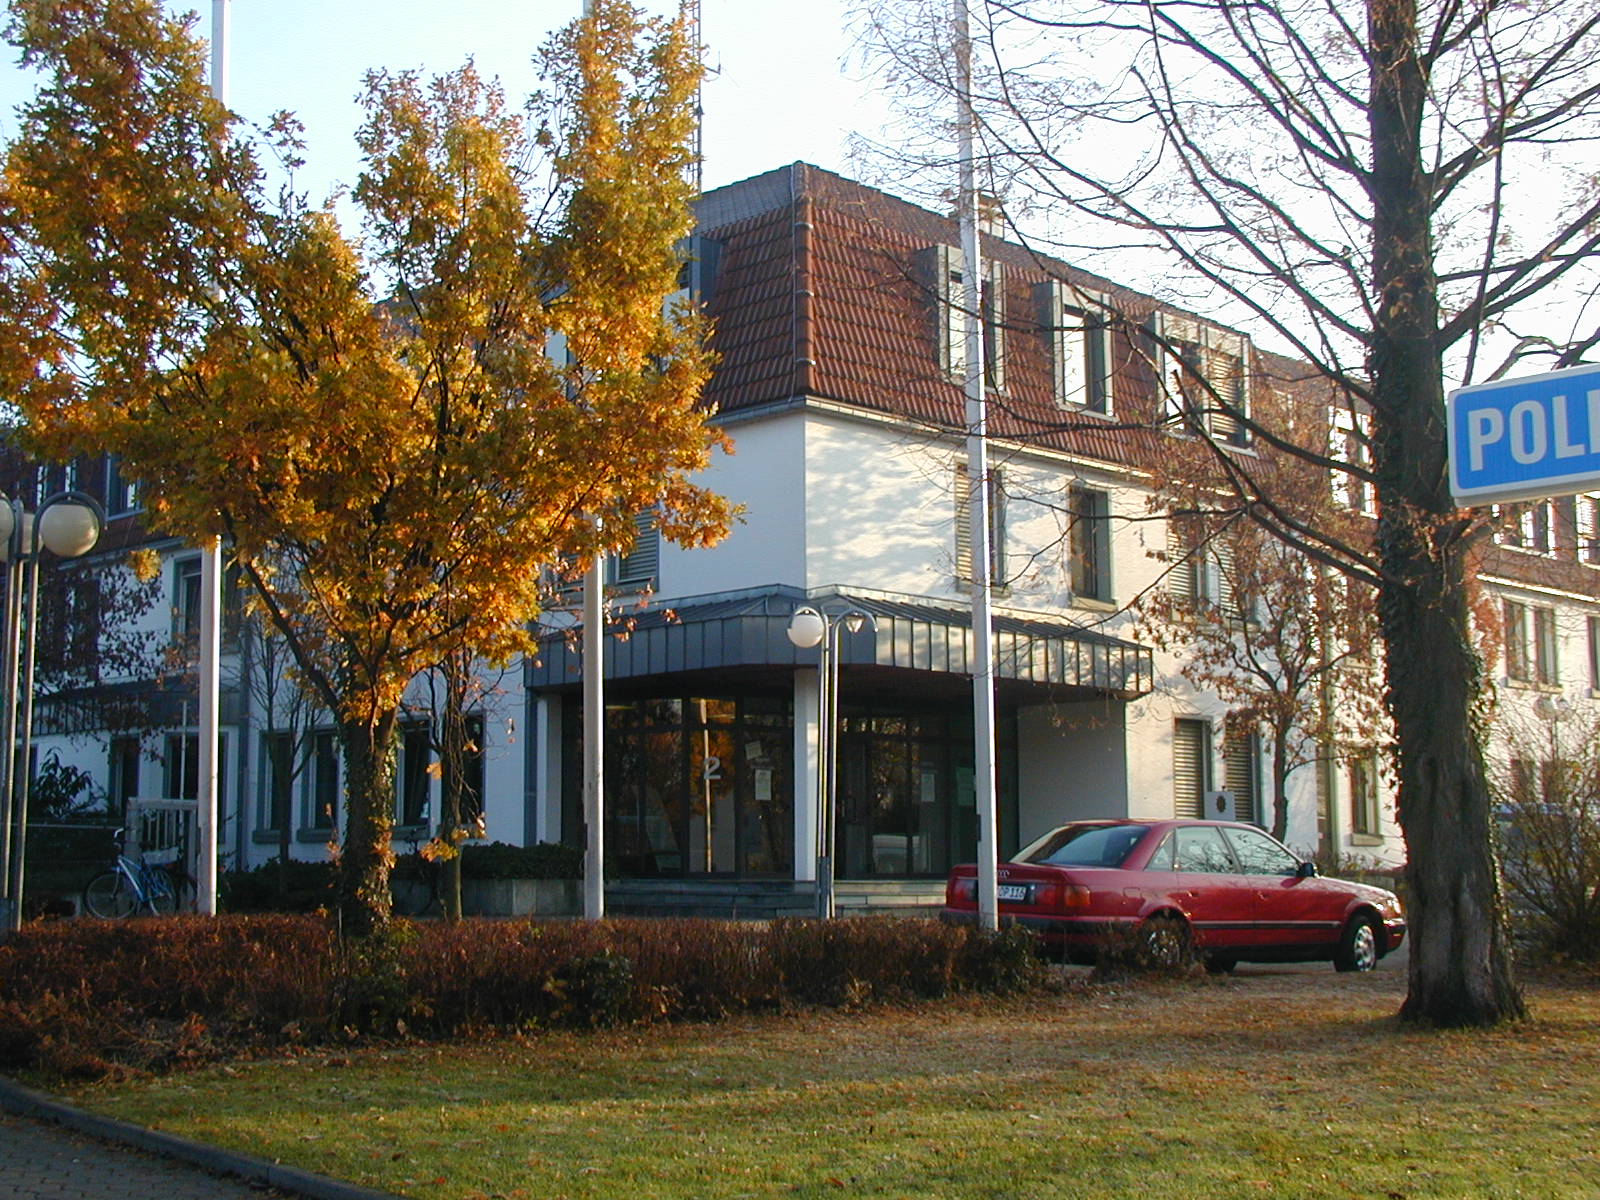 Polizeidienstgebäude in Soest